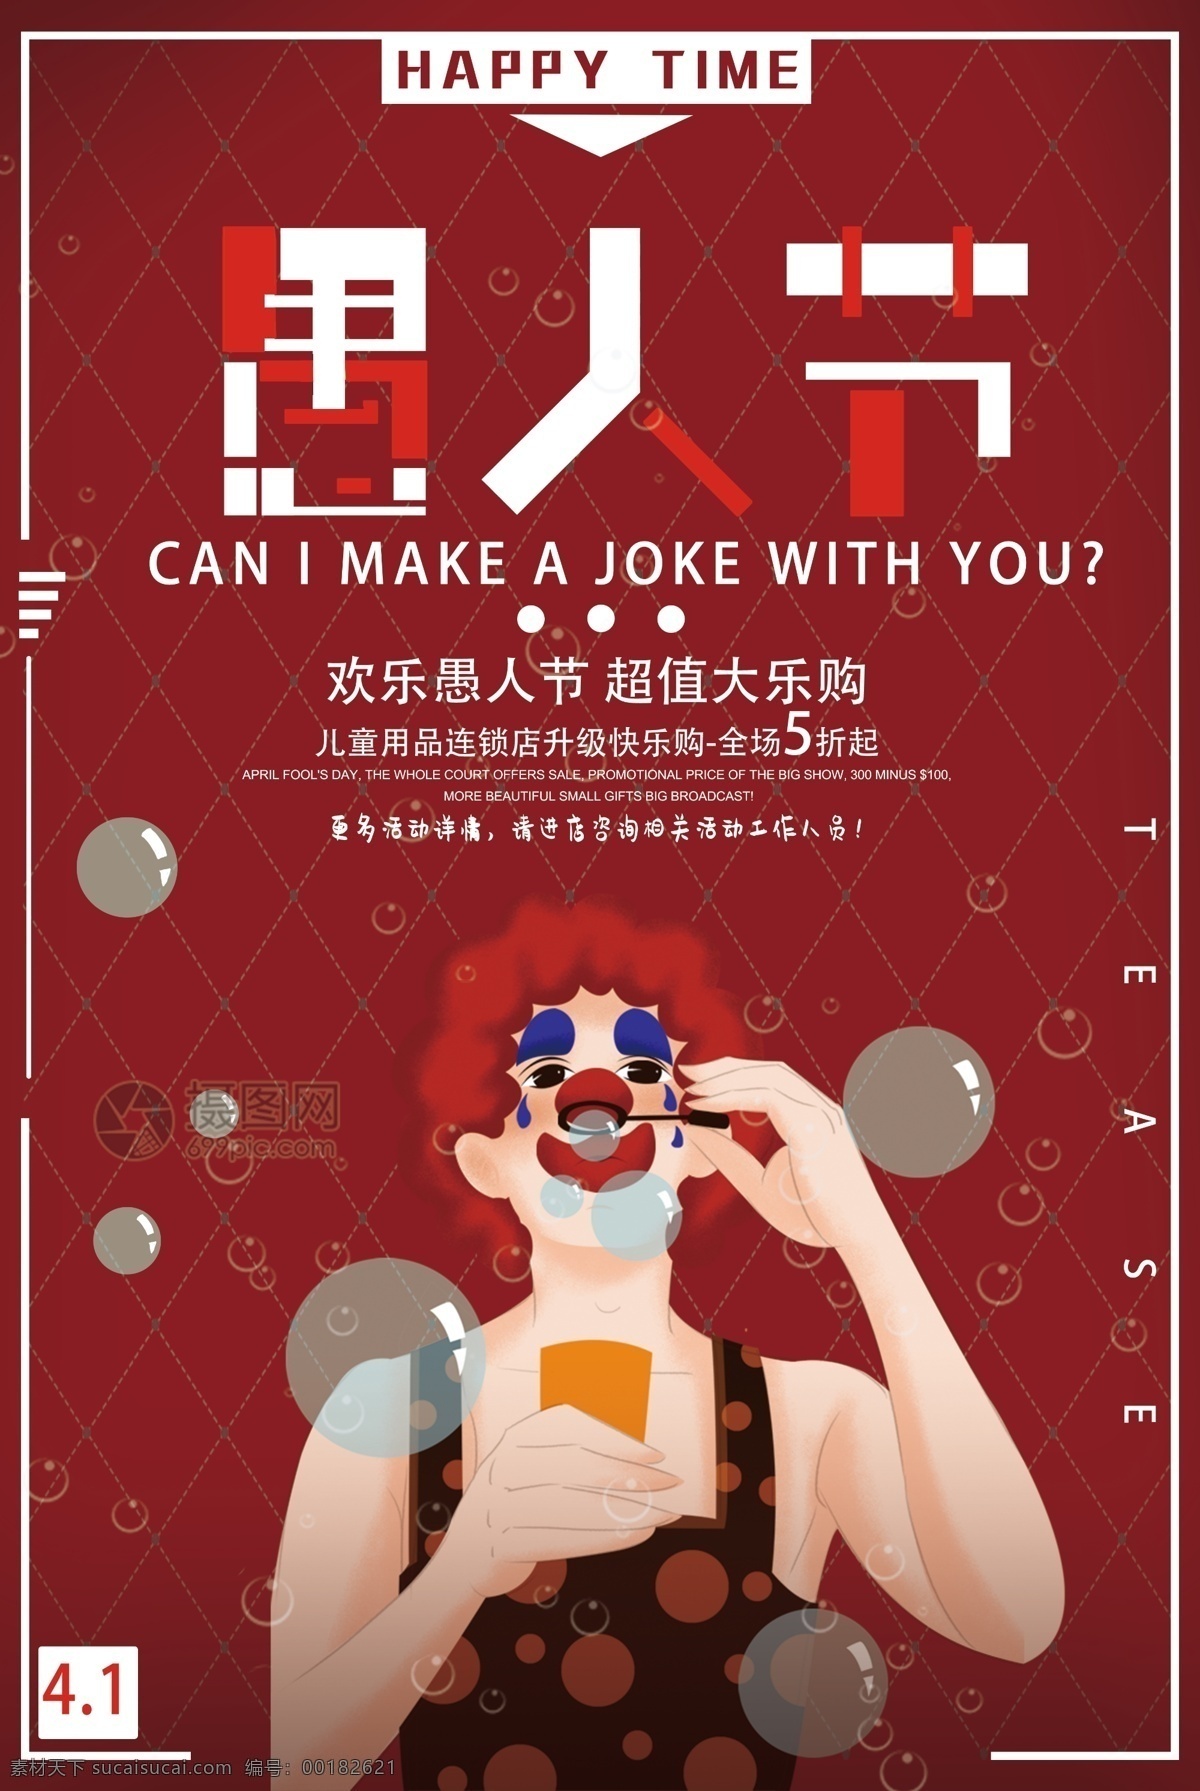 简约 红色 愚人节 儿童用品 促销 海报 欢乐 4月1日 愚人 愚人节海报 小丑 搞怪